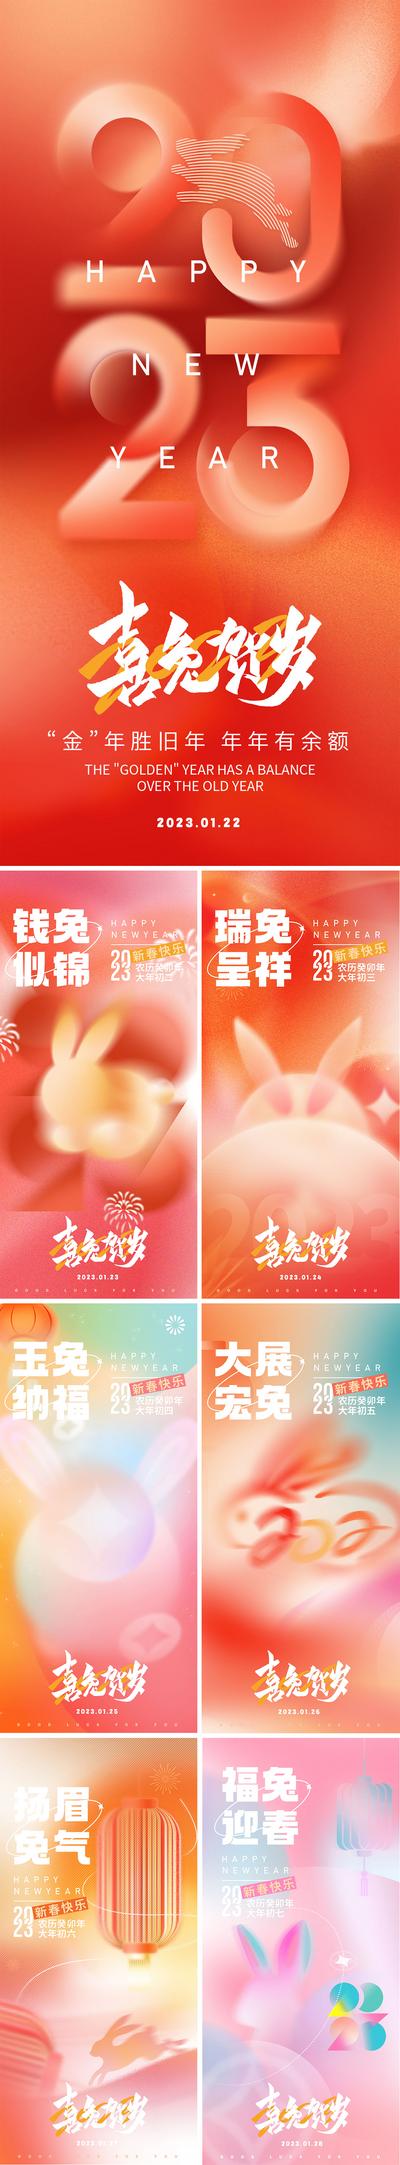 南门网 海报 房地产 中国传统节日 春节 除夕 兔年